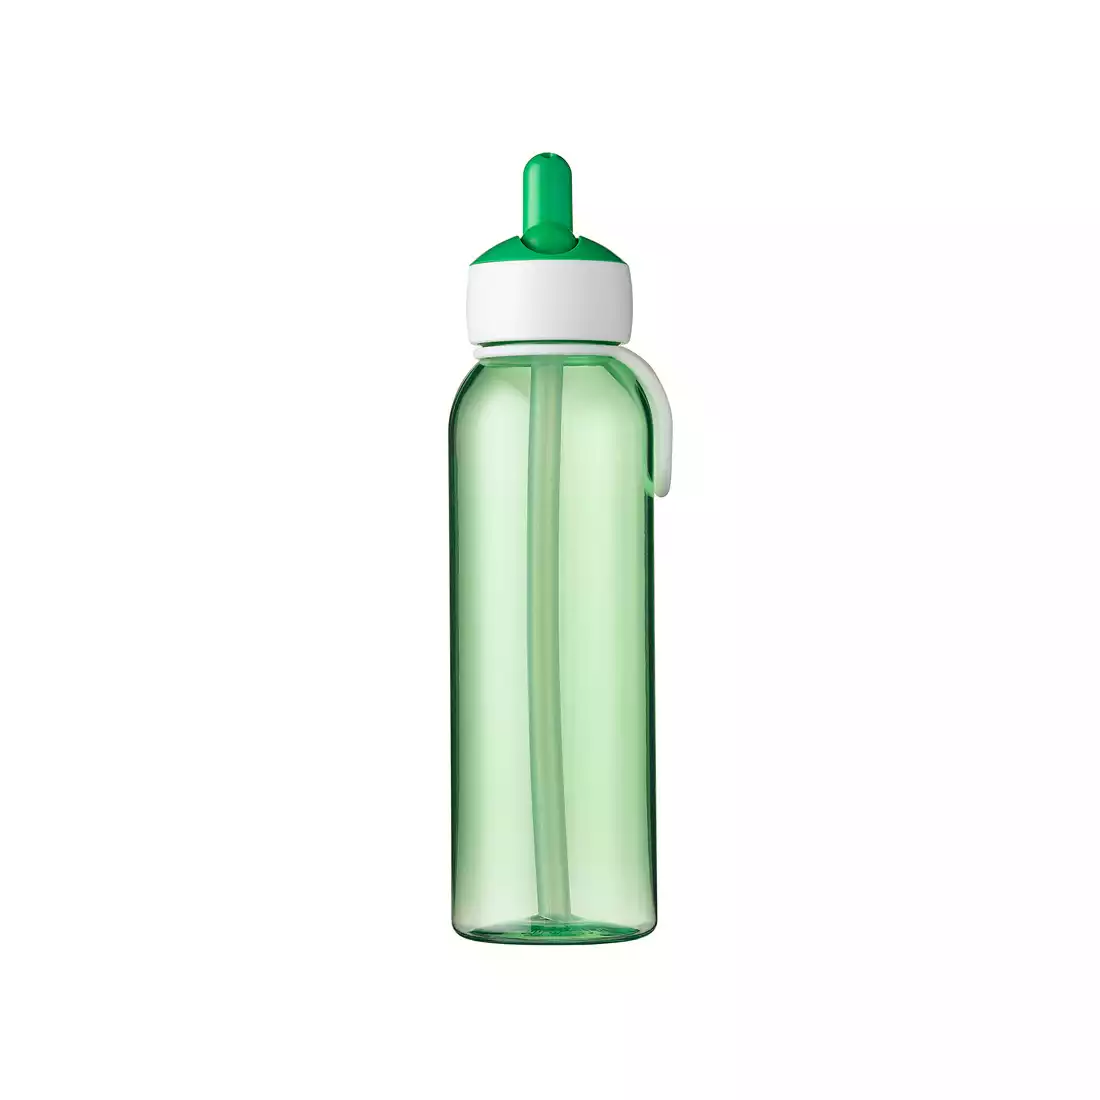 MEPAL FLIP-UP CAMPUS 500 ml wasserflasche, grün